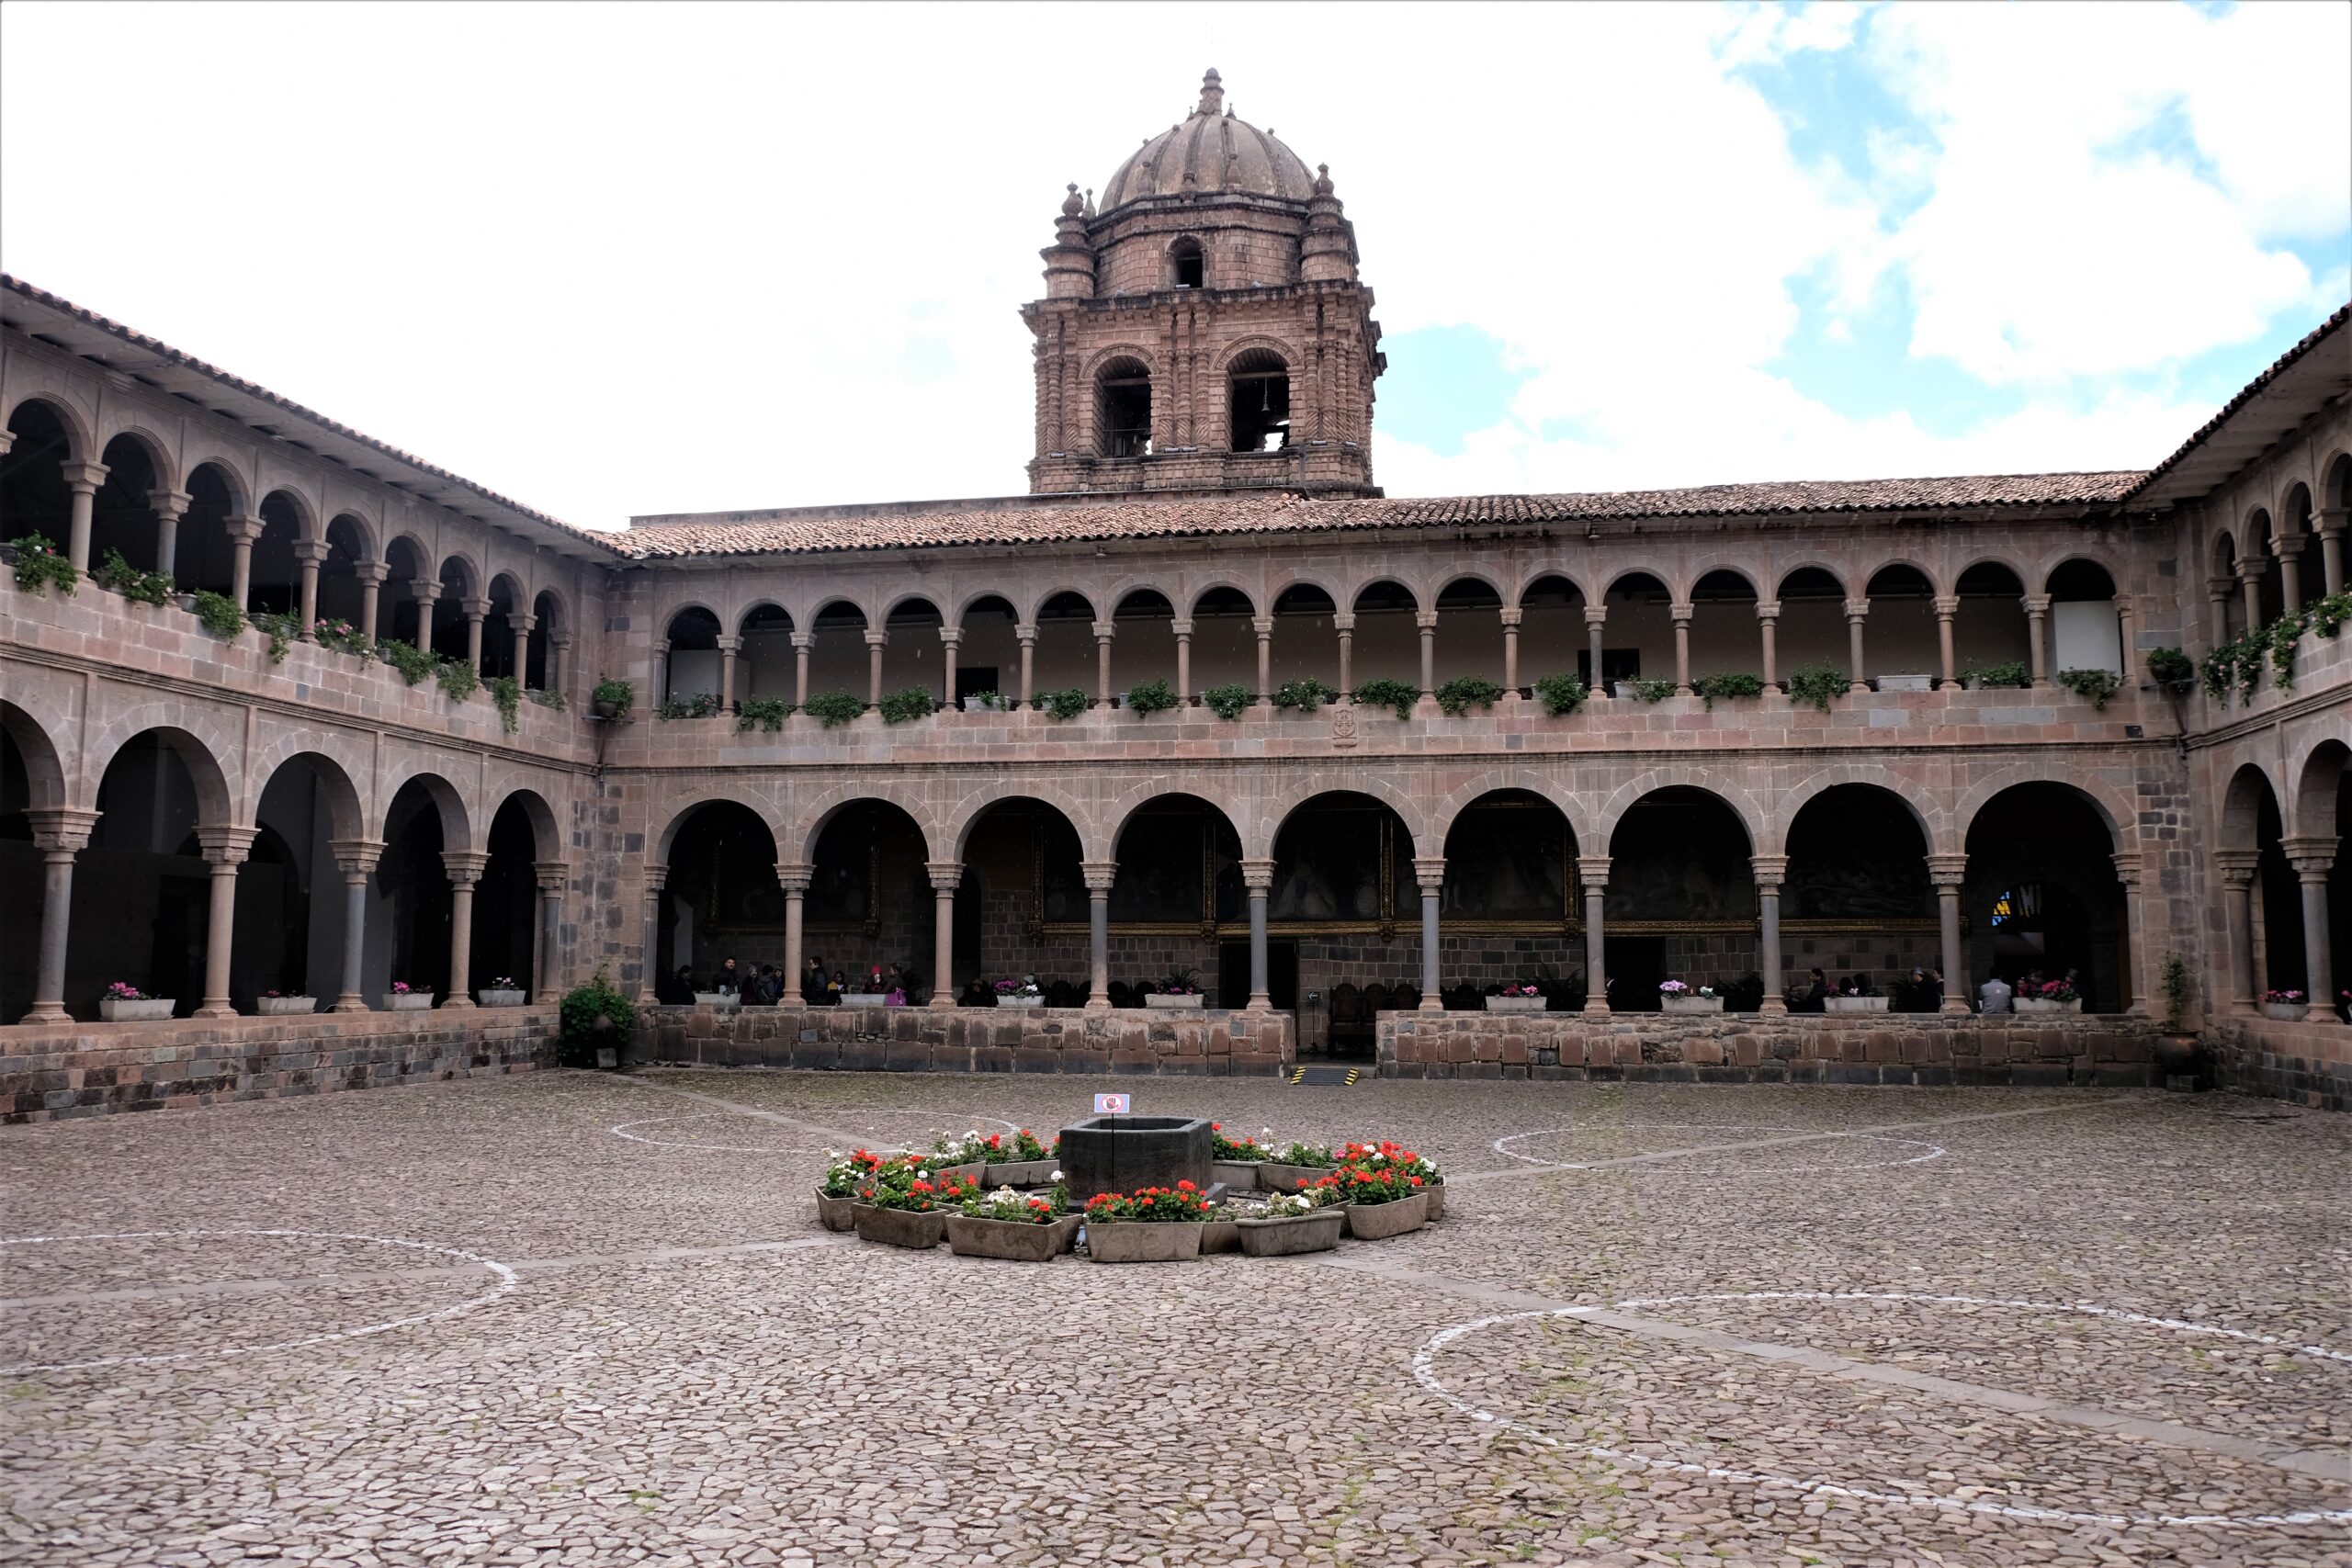 Convent of Santo Domingo